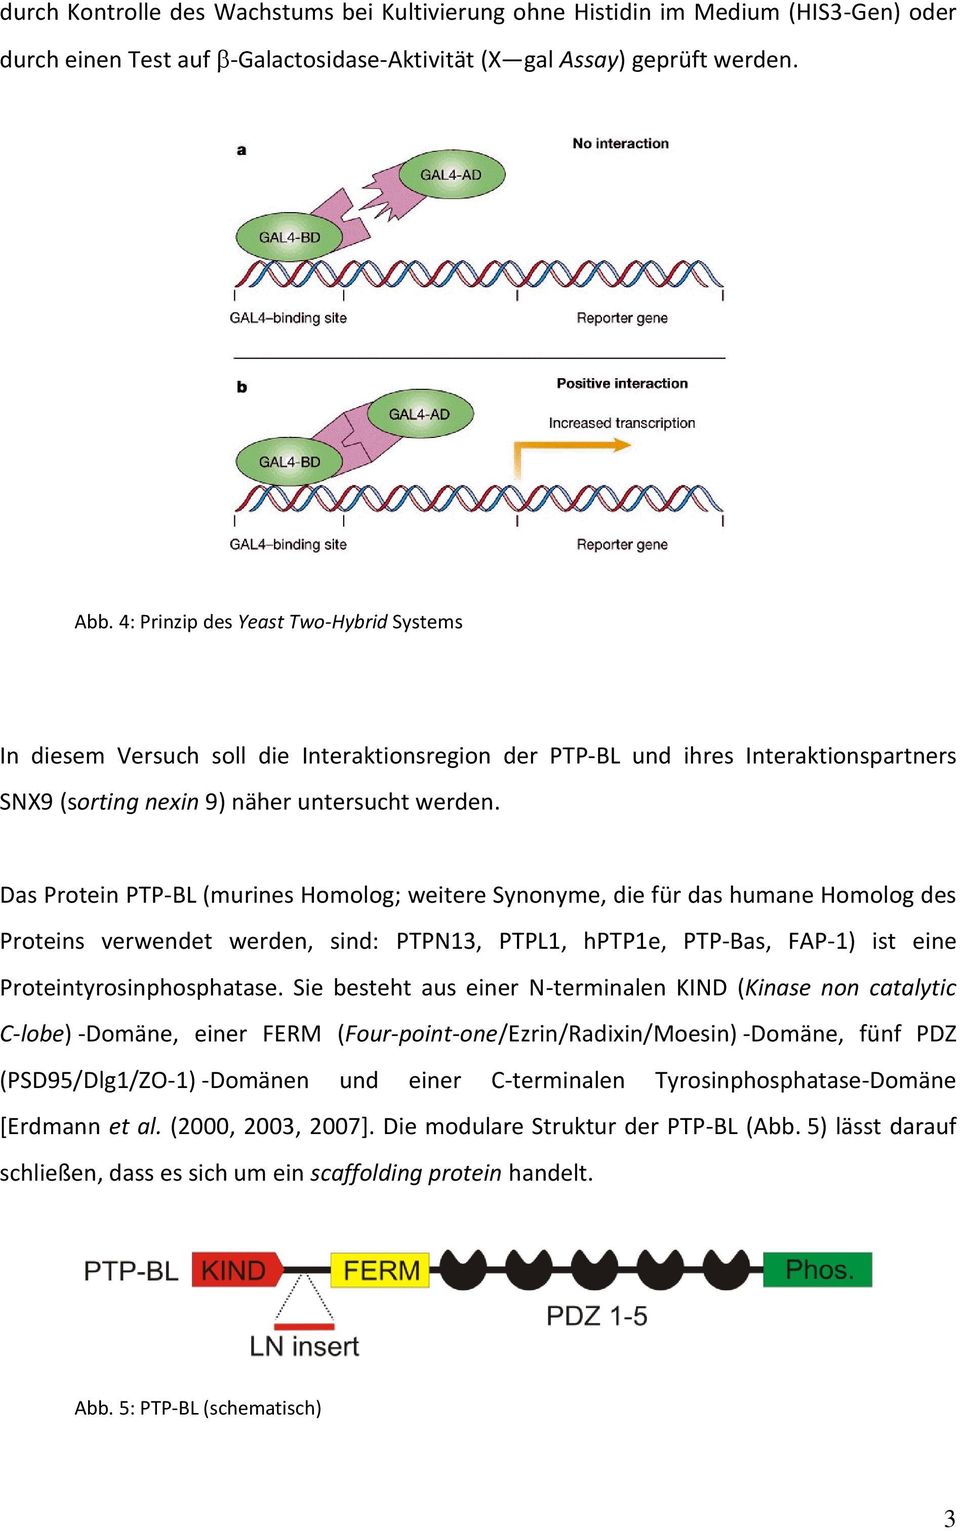 Das Protein PTP-BL (murines Homolog; weitere Synonyme, die für das humane Homolog des Proteins verwendet werden, sind: PTPN13, PTPL1, hptp1e, PTP-Bas, FAP-1) ist eine Proteintyrosinphosphatase.